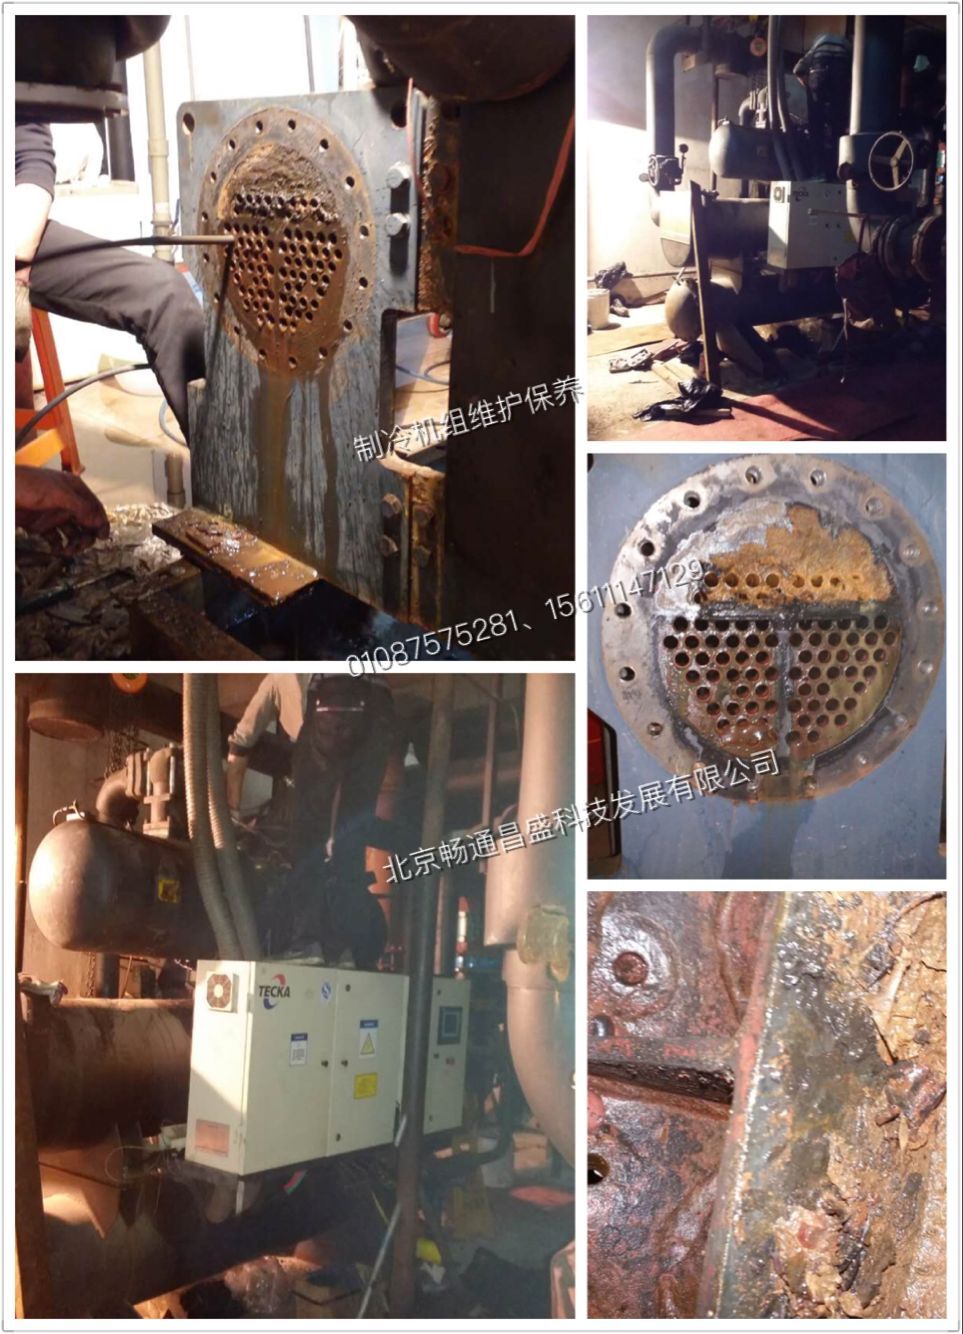 盾安螺杆式水源热泵蒸发器进水故障维修